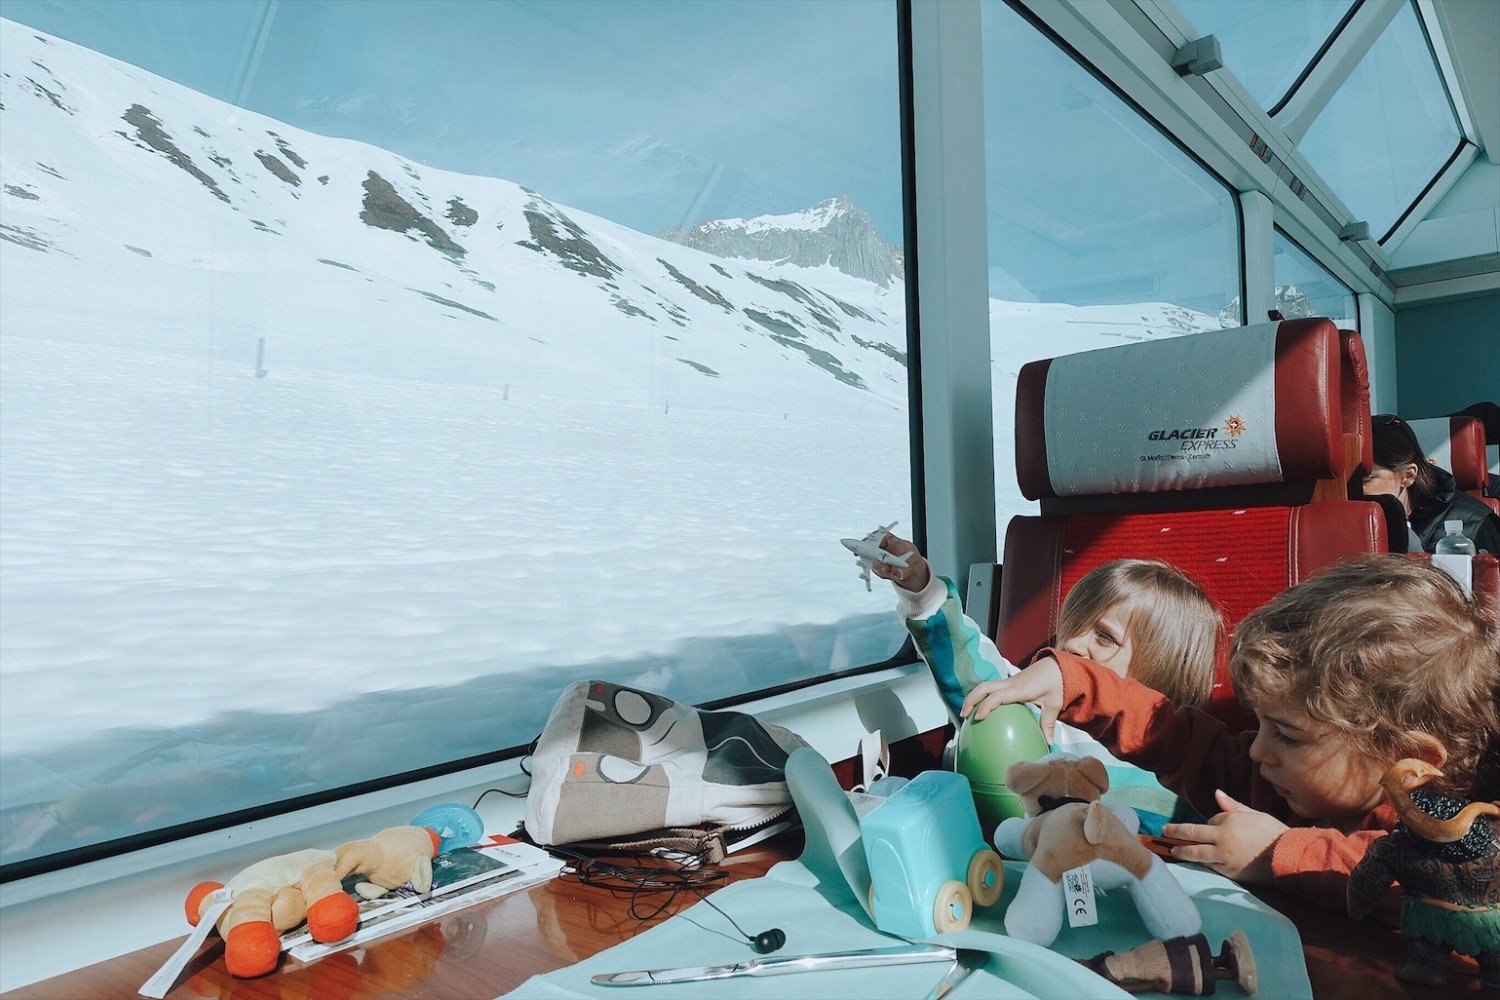 Glacier Express - O trem panorâmico mais famoso da Suíça 